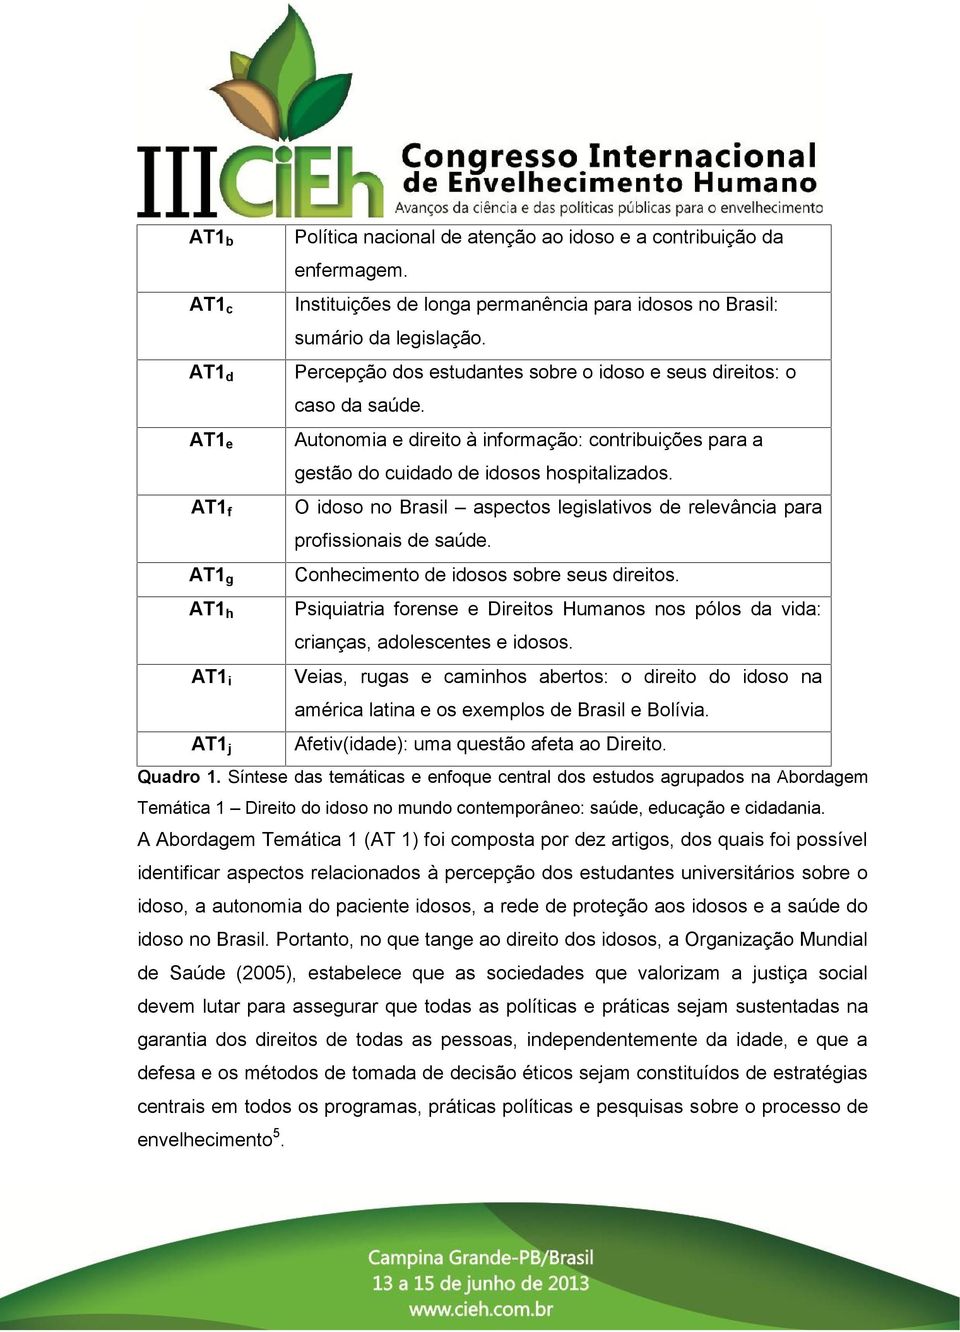 AT1 f O idoso no Brasil aspectos legislativos de relevância para profissionais de saúde. AT1 g Conhecimento de idosos sobre seus direitos.